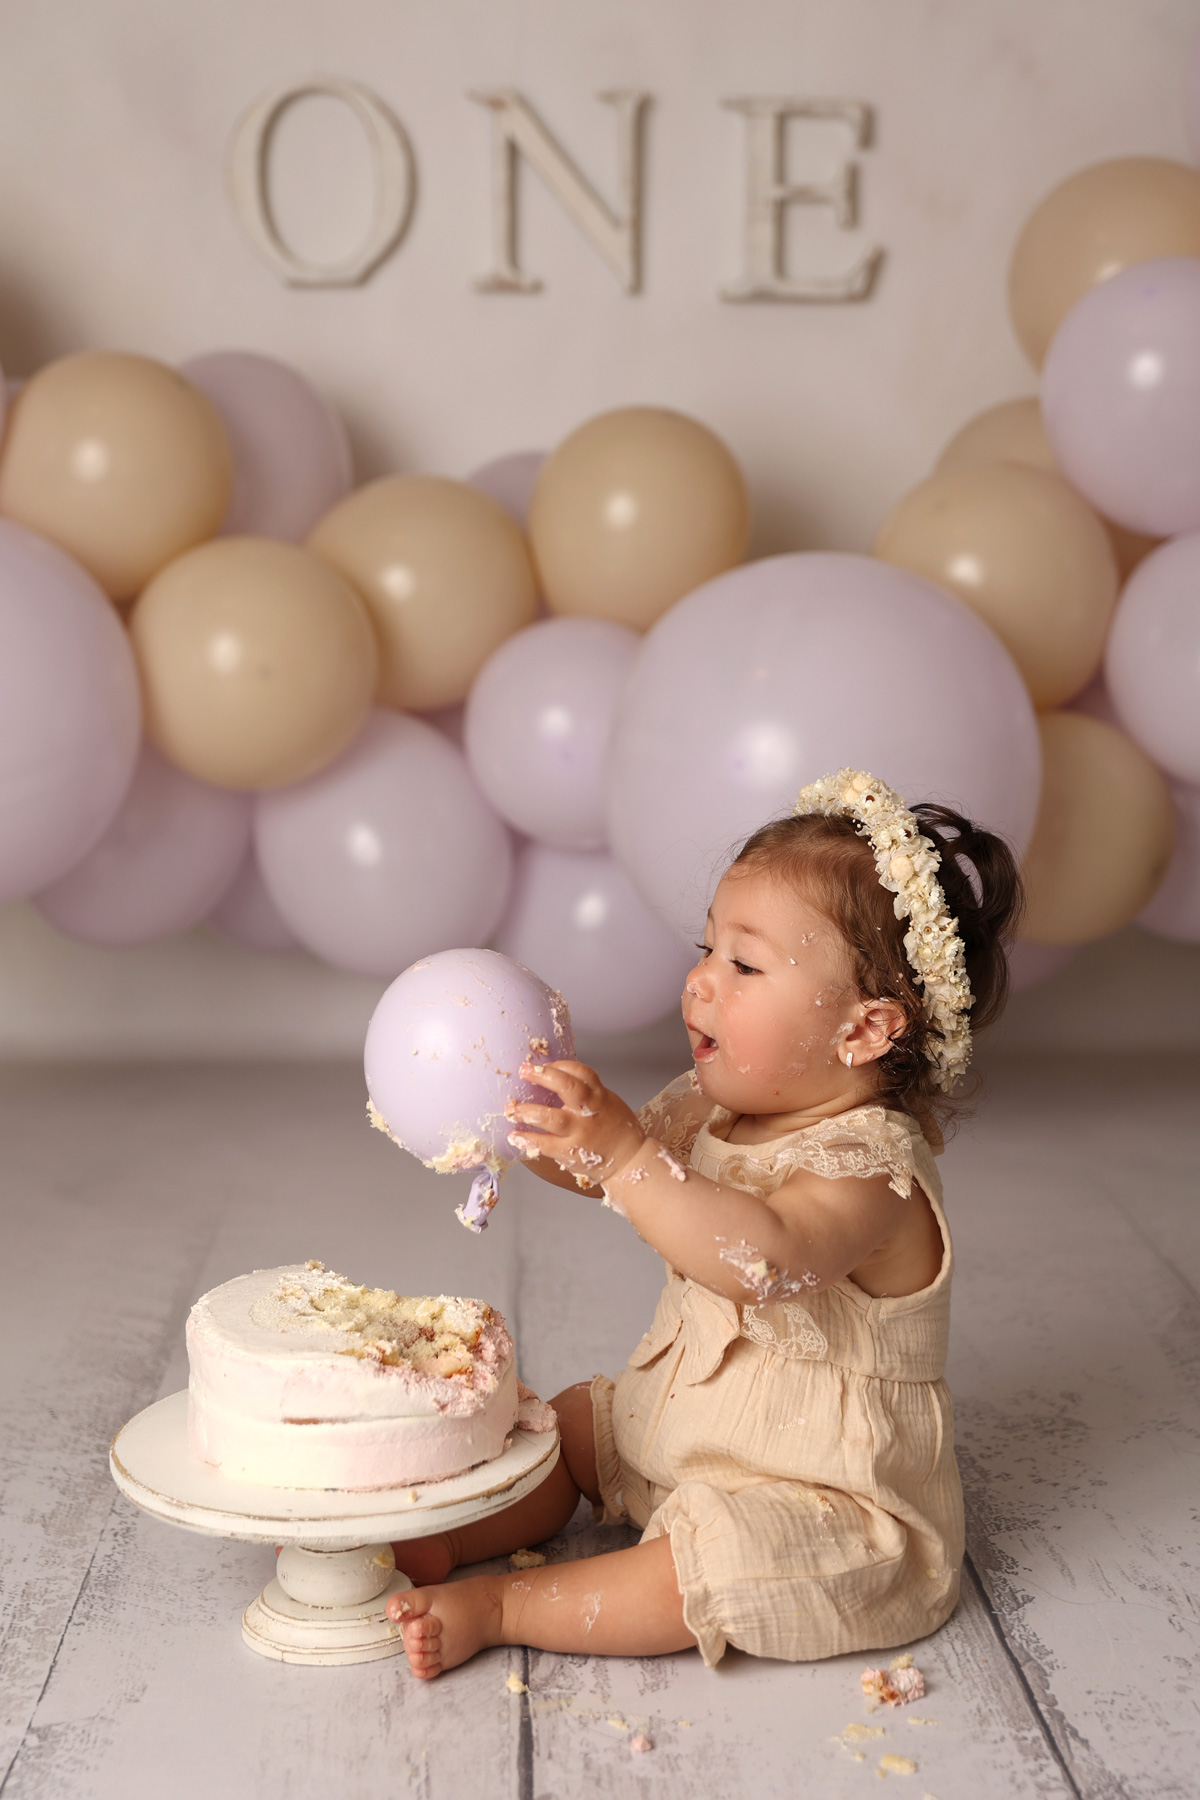 Baby mit Luftballon und Torte